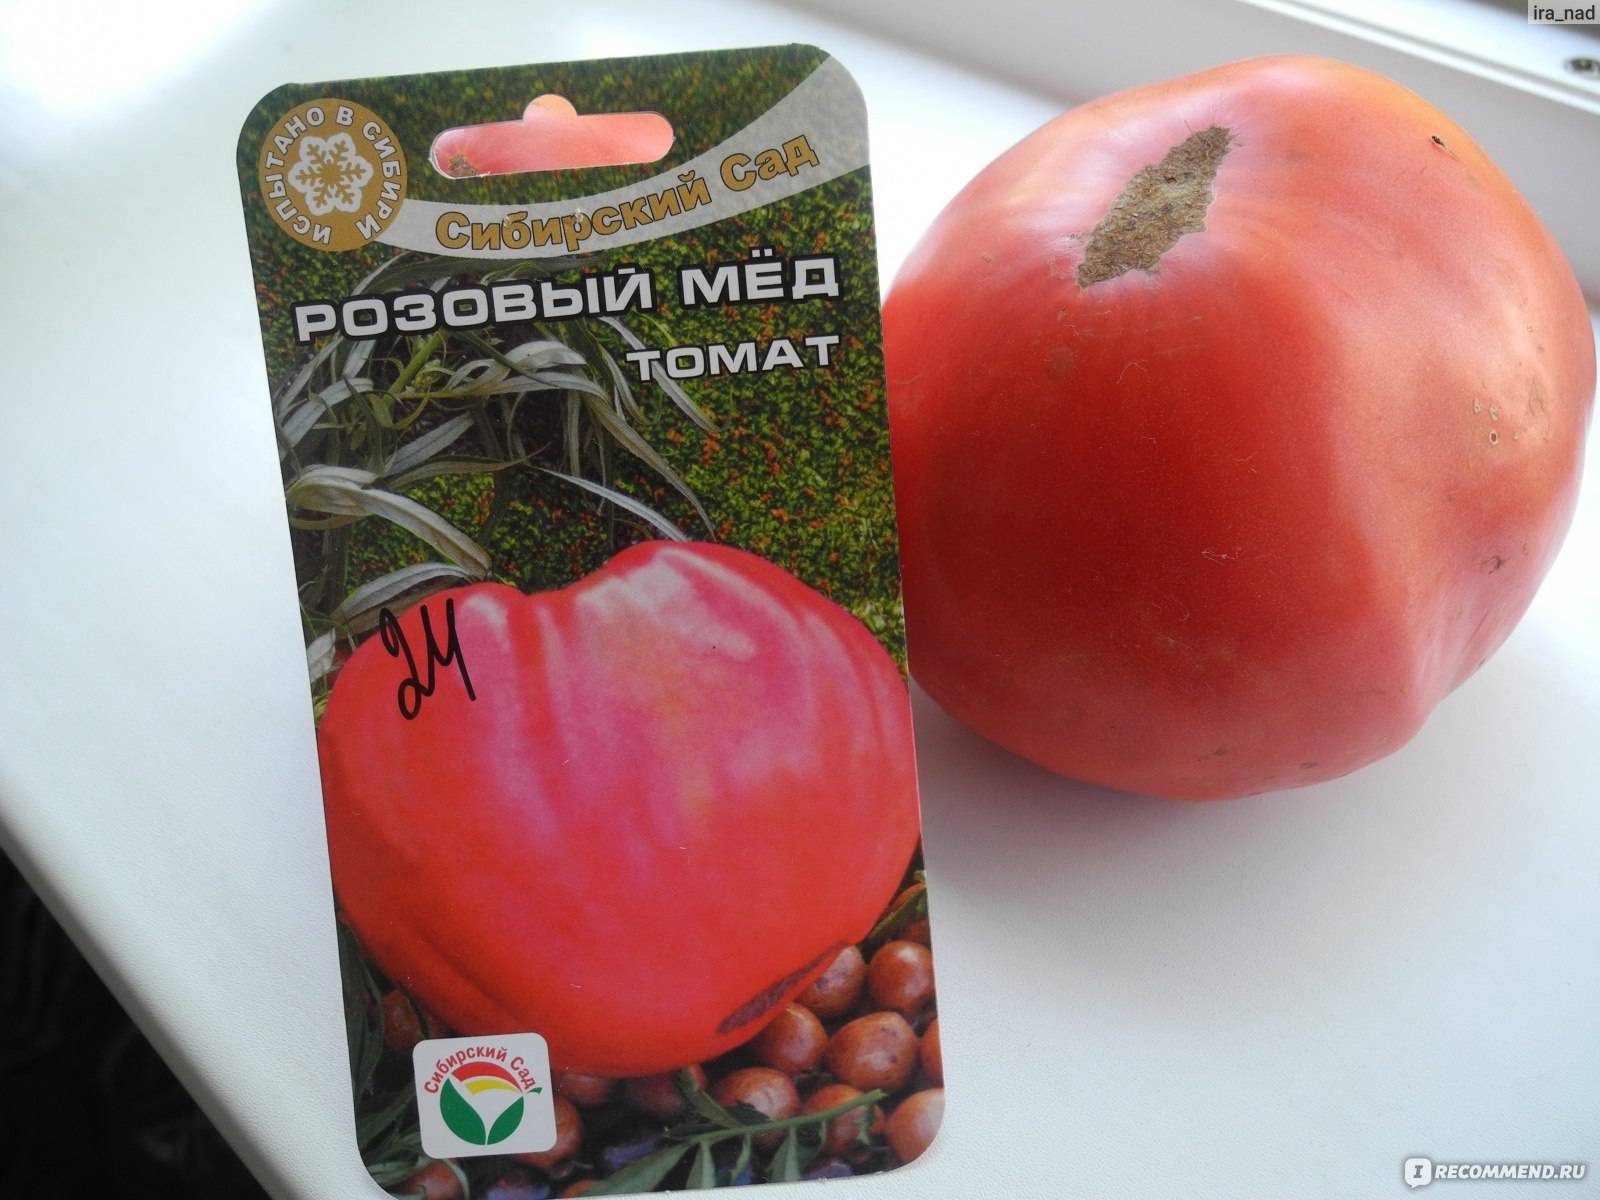 Розовый мед томат описание и фото